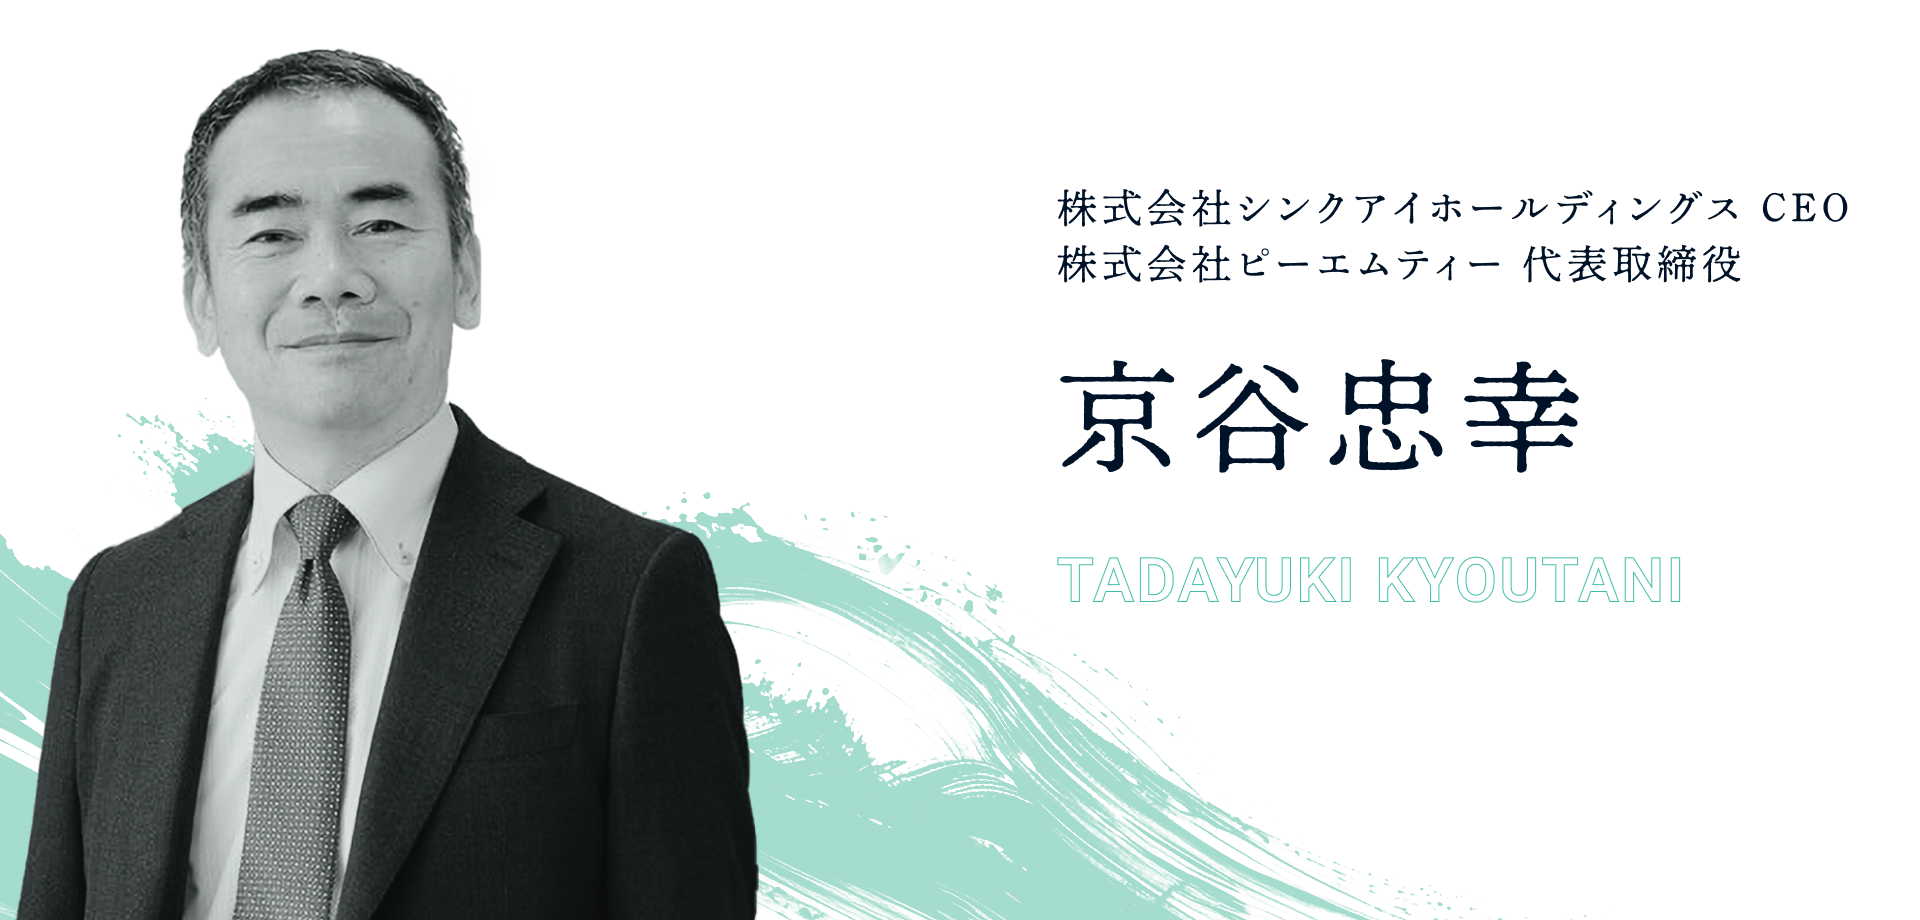 京谷忠幸(TADAYUKI KYOUTANI)株式会社シンクアイホールディングス CEO、株式会社ピーエムティー 代表取締役